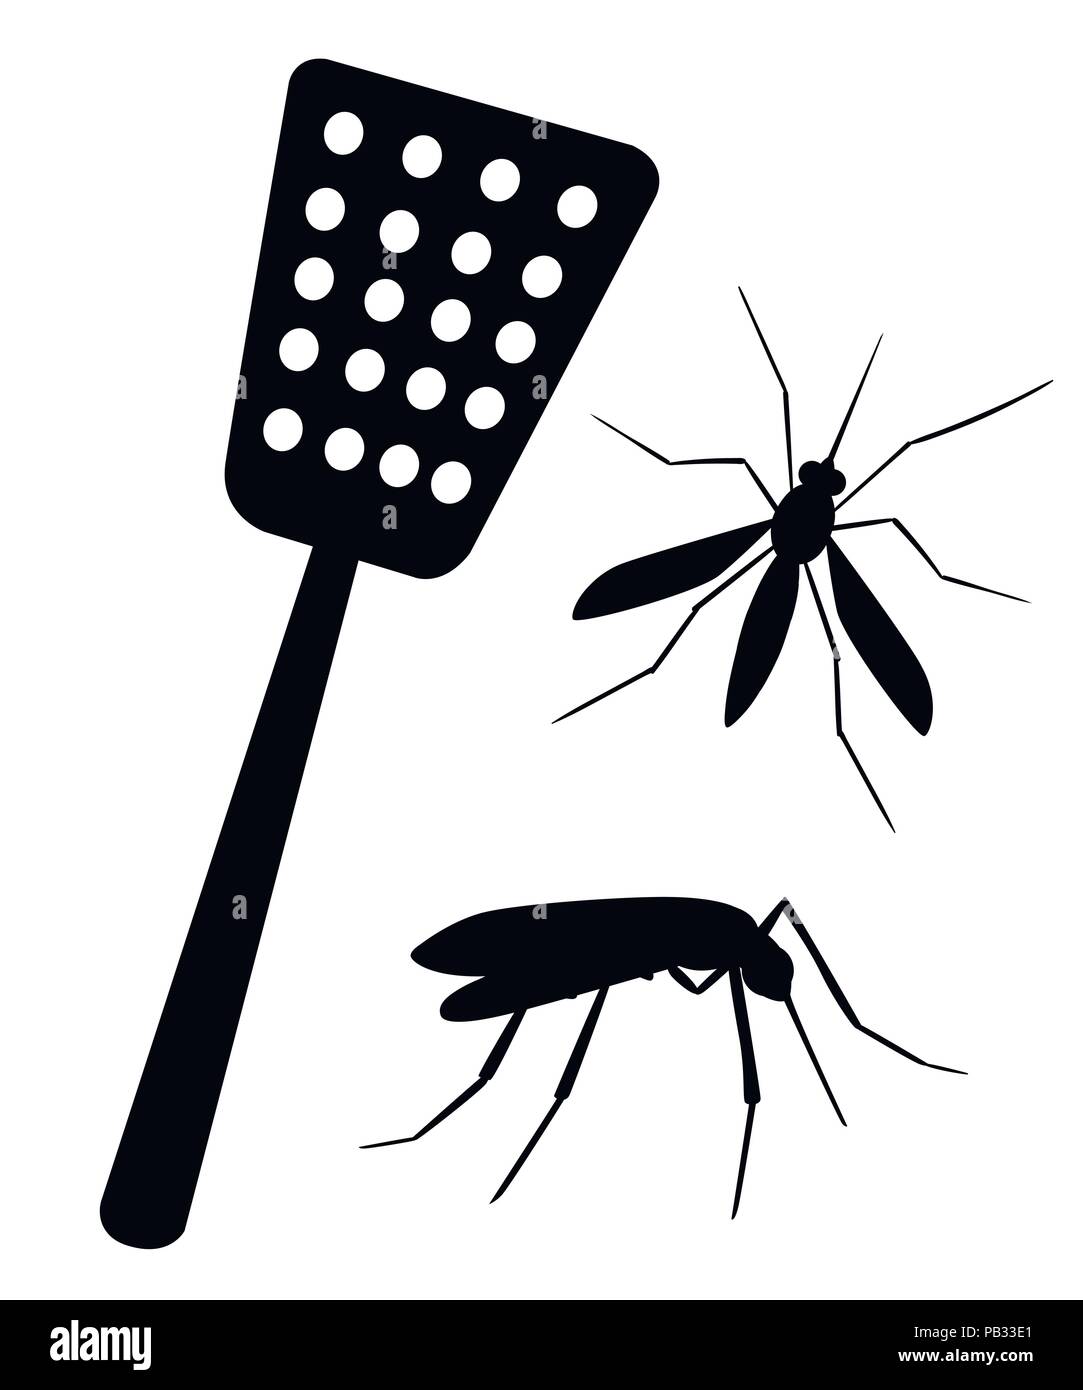 Schwarze Silhouette. Swatter mit Mücken Fliegen. Werkzeug für die Zerstörung der Insekten zu Hause. Red swatter am blauen Griff. Flache Vektor-illustration isoliert Stock Vektor